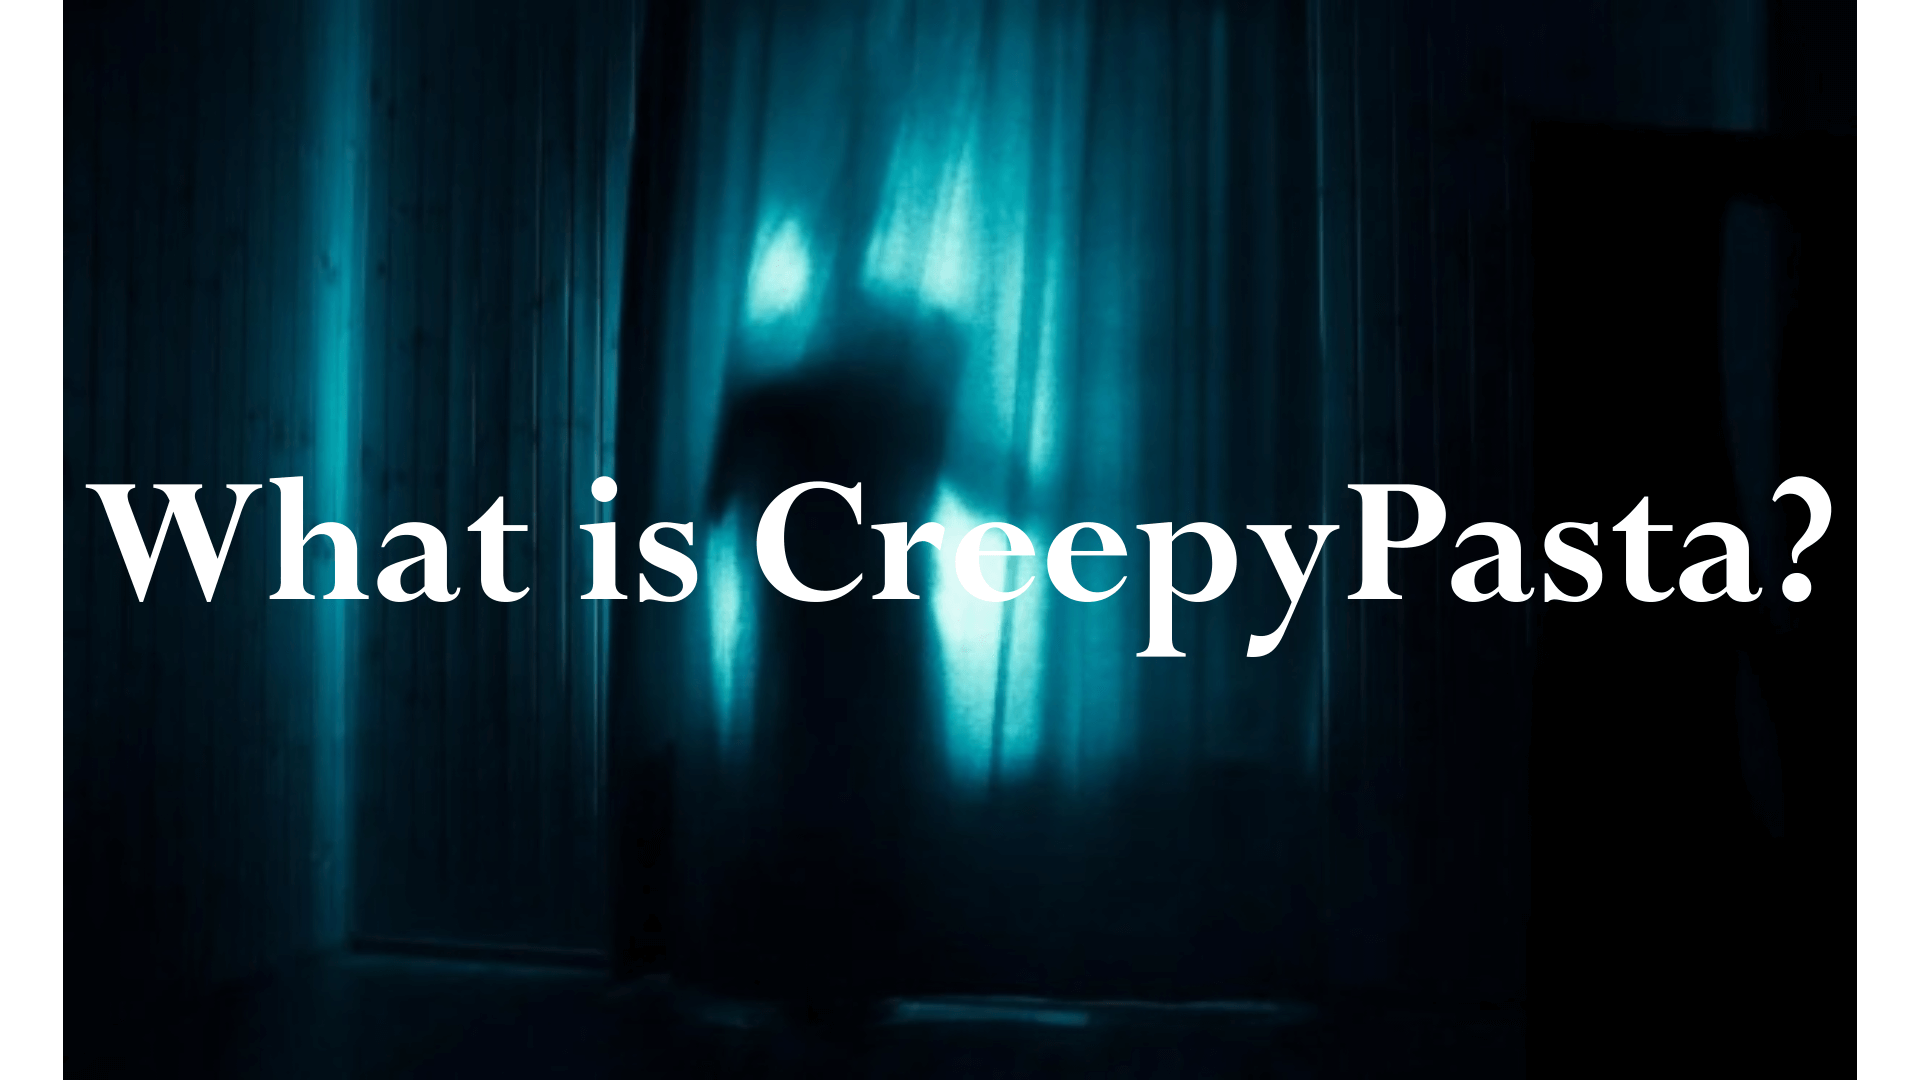 creepypasta scary story